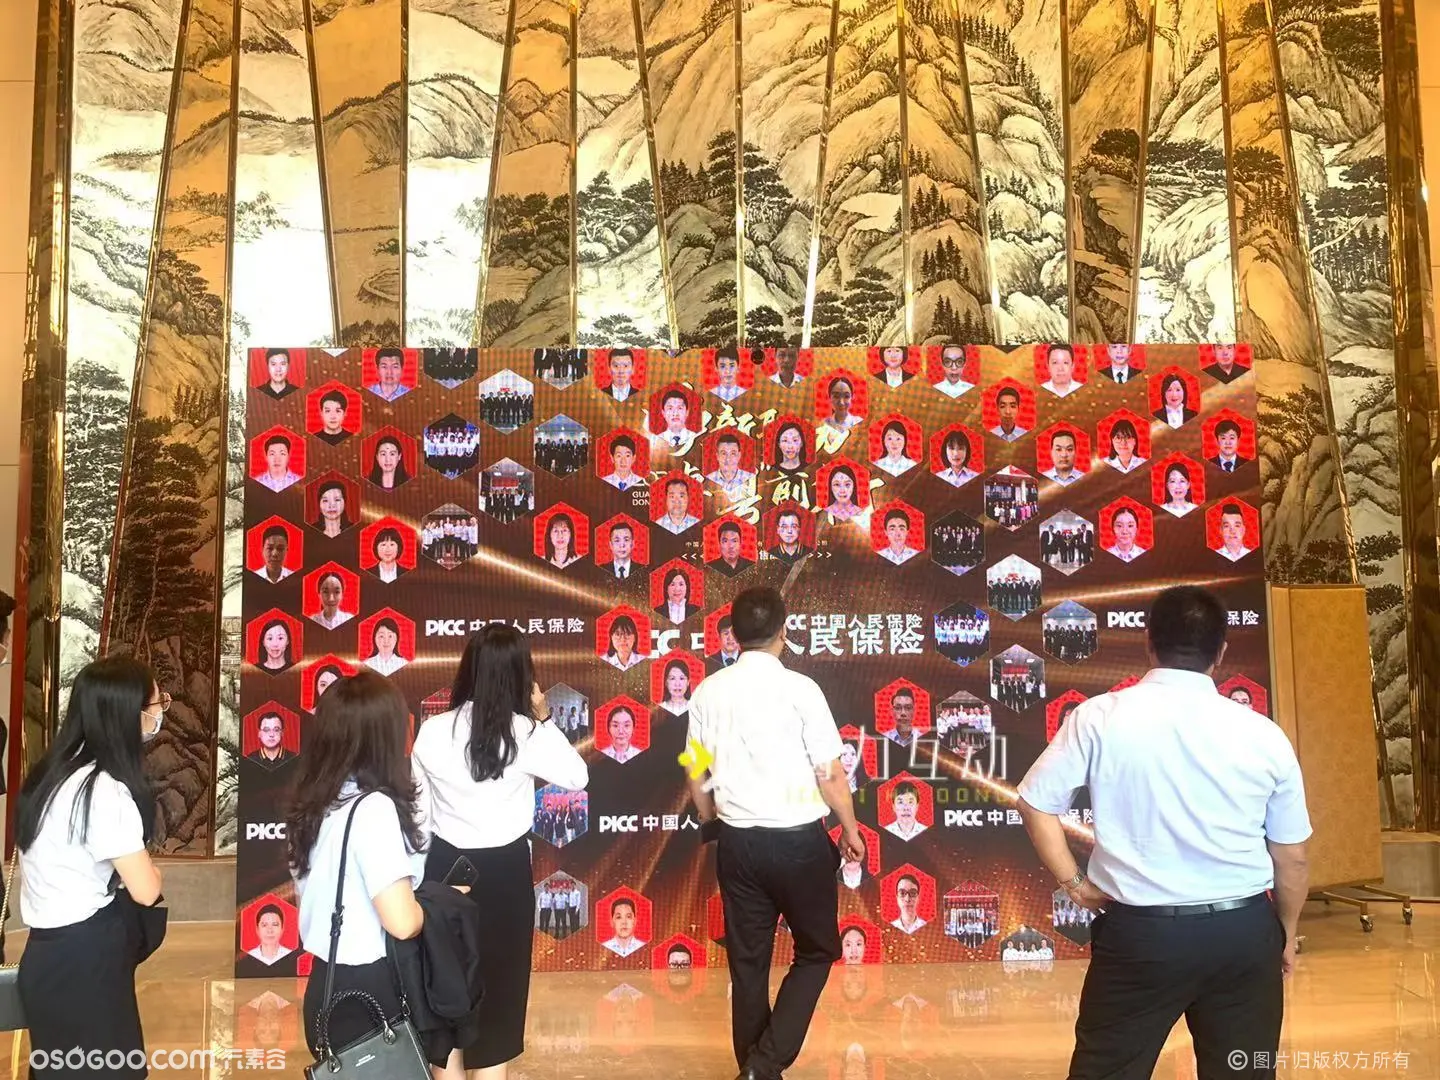 中国人民保险年度MDRT专属荣誉表彰|荣誉墙展示互动